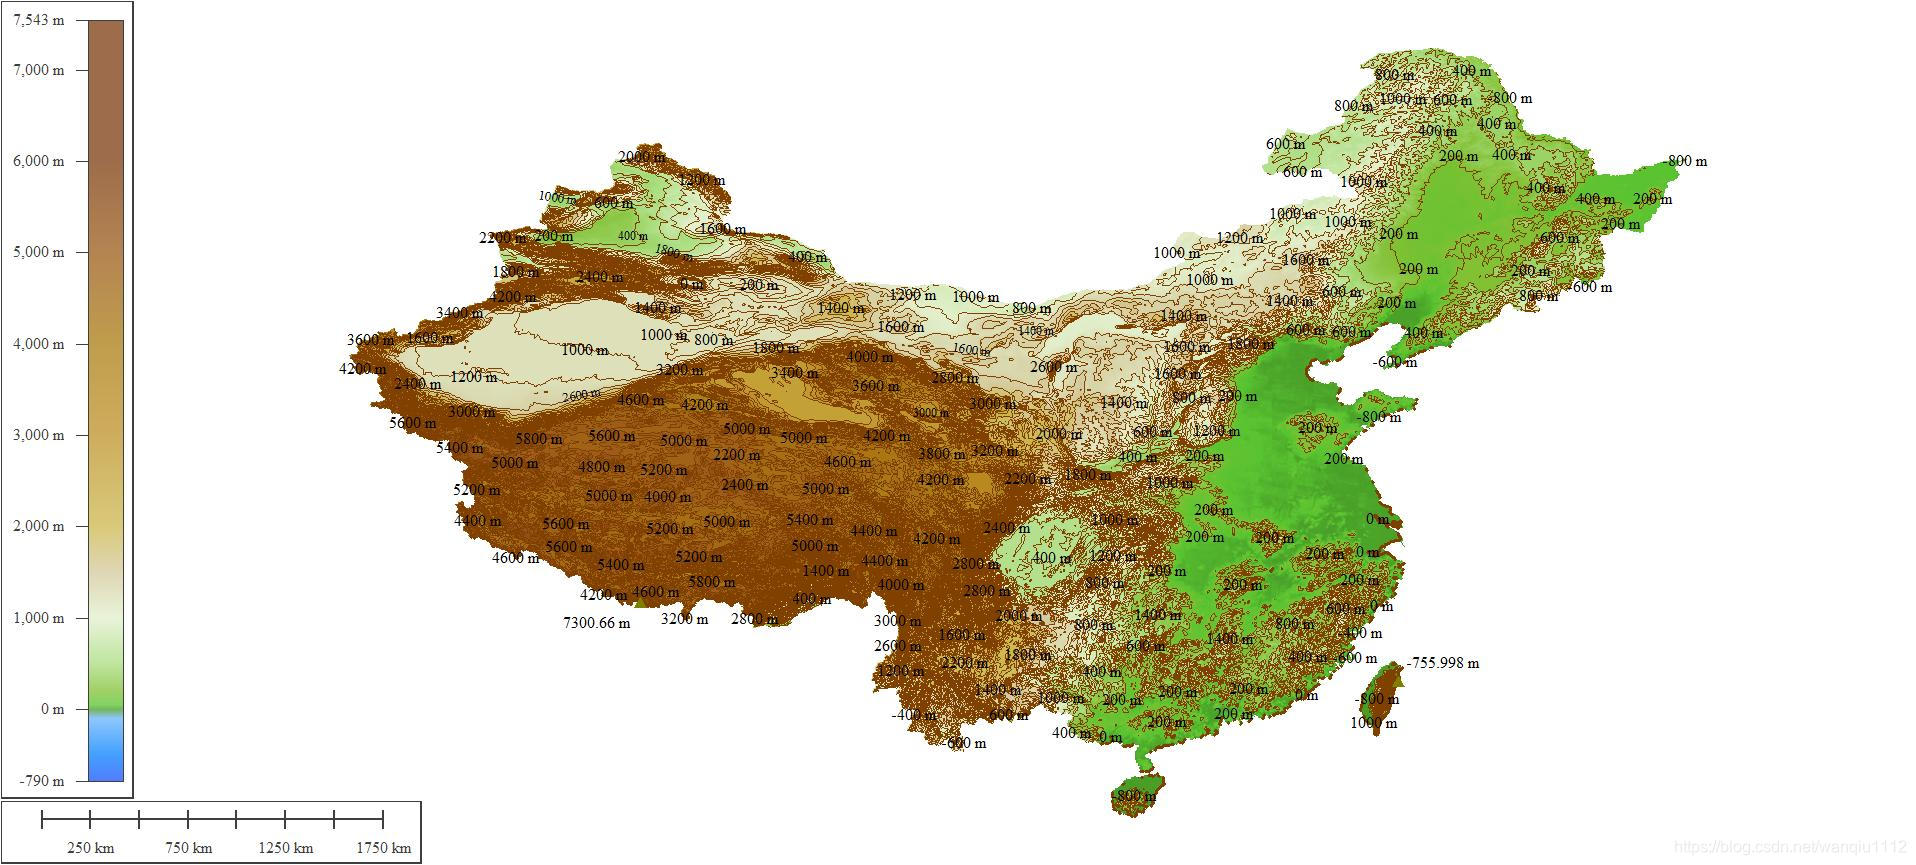 China contour map